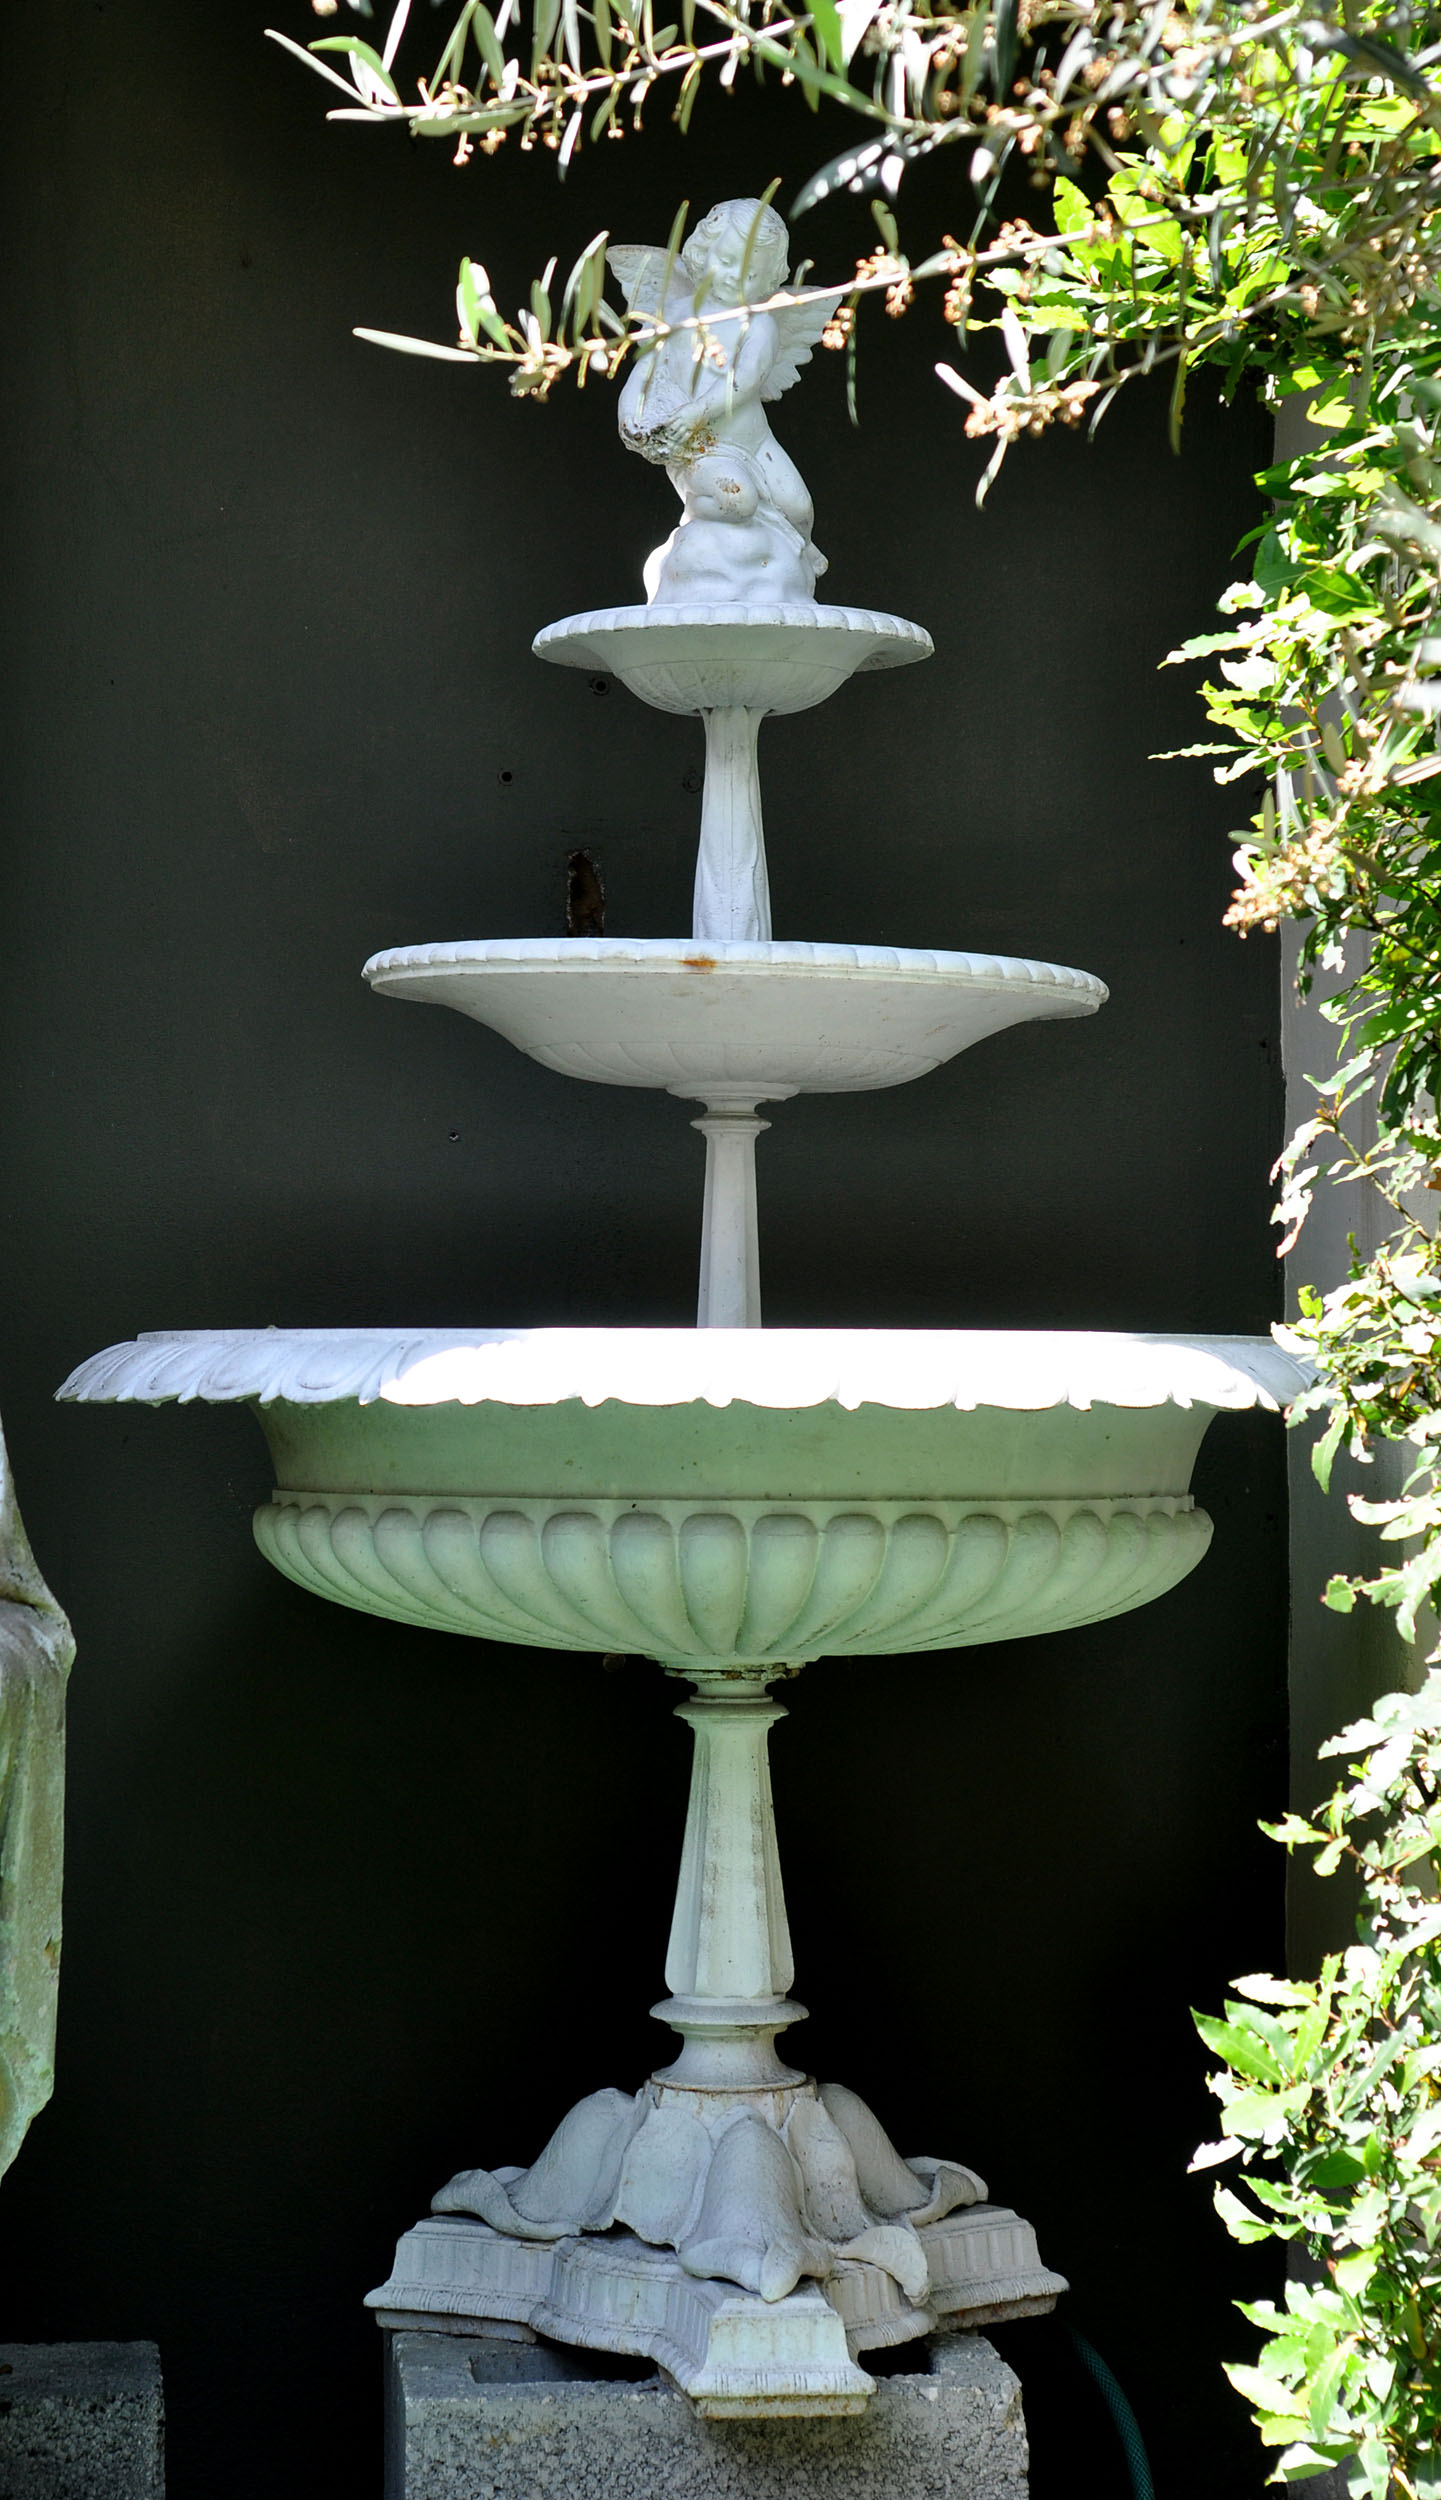 A Victorian Cast Iron Handyside Fountain